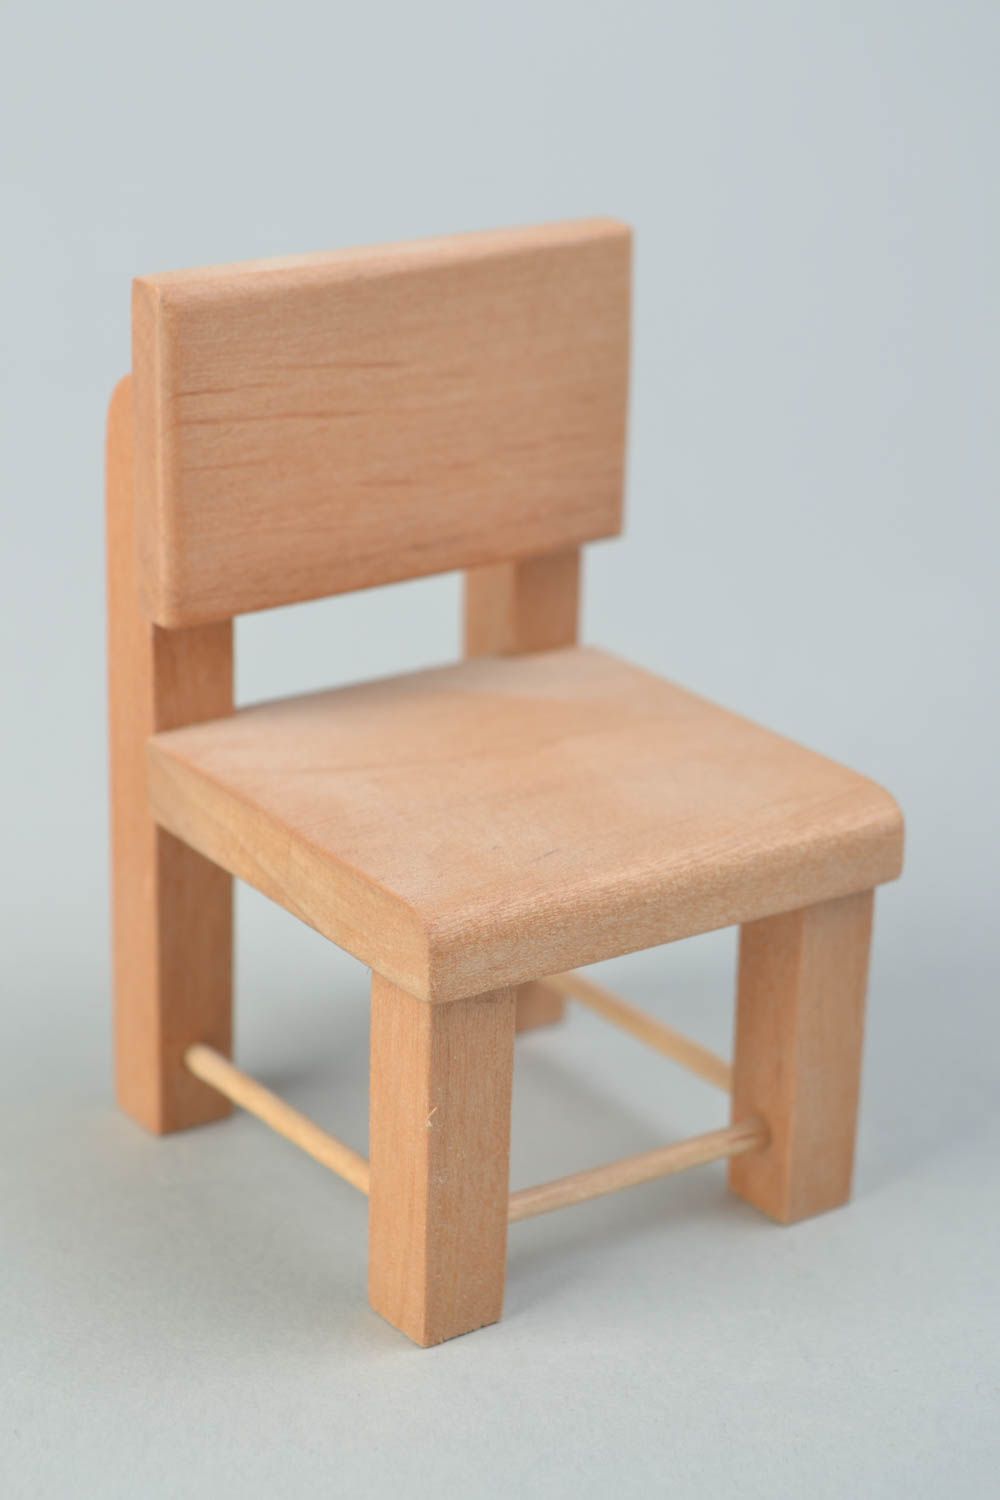 Материалы для творчества заготовка стул для кукол ручной работы для декупажа фото 1